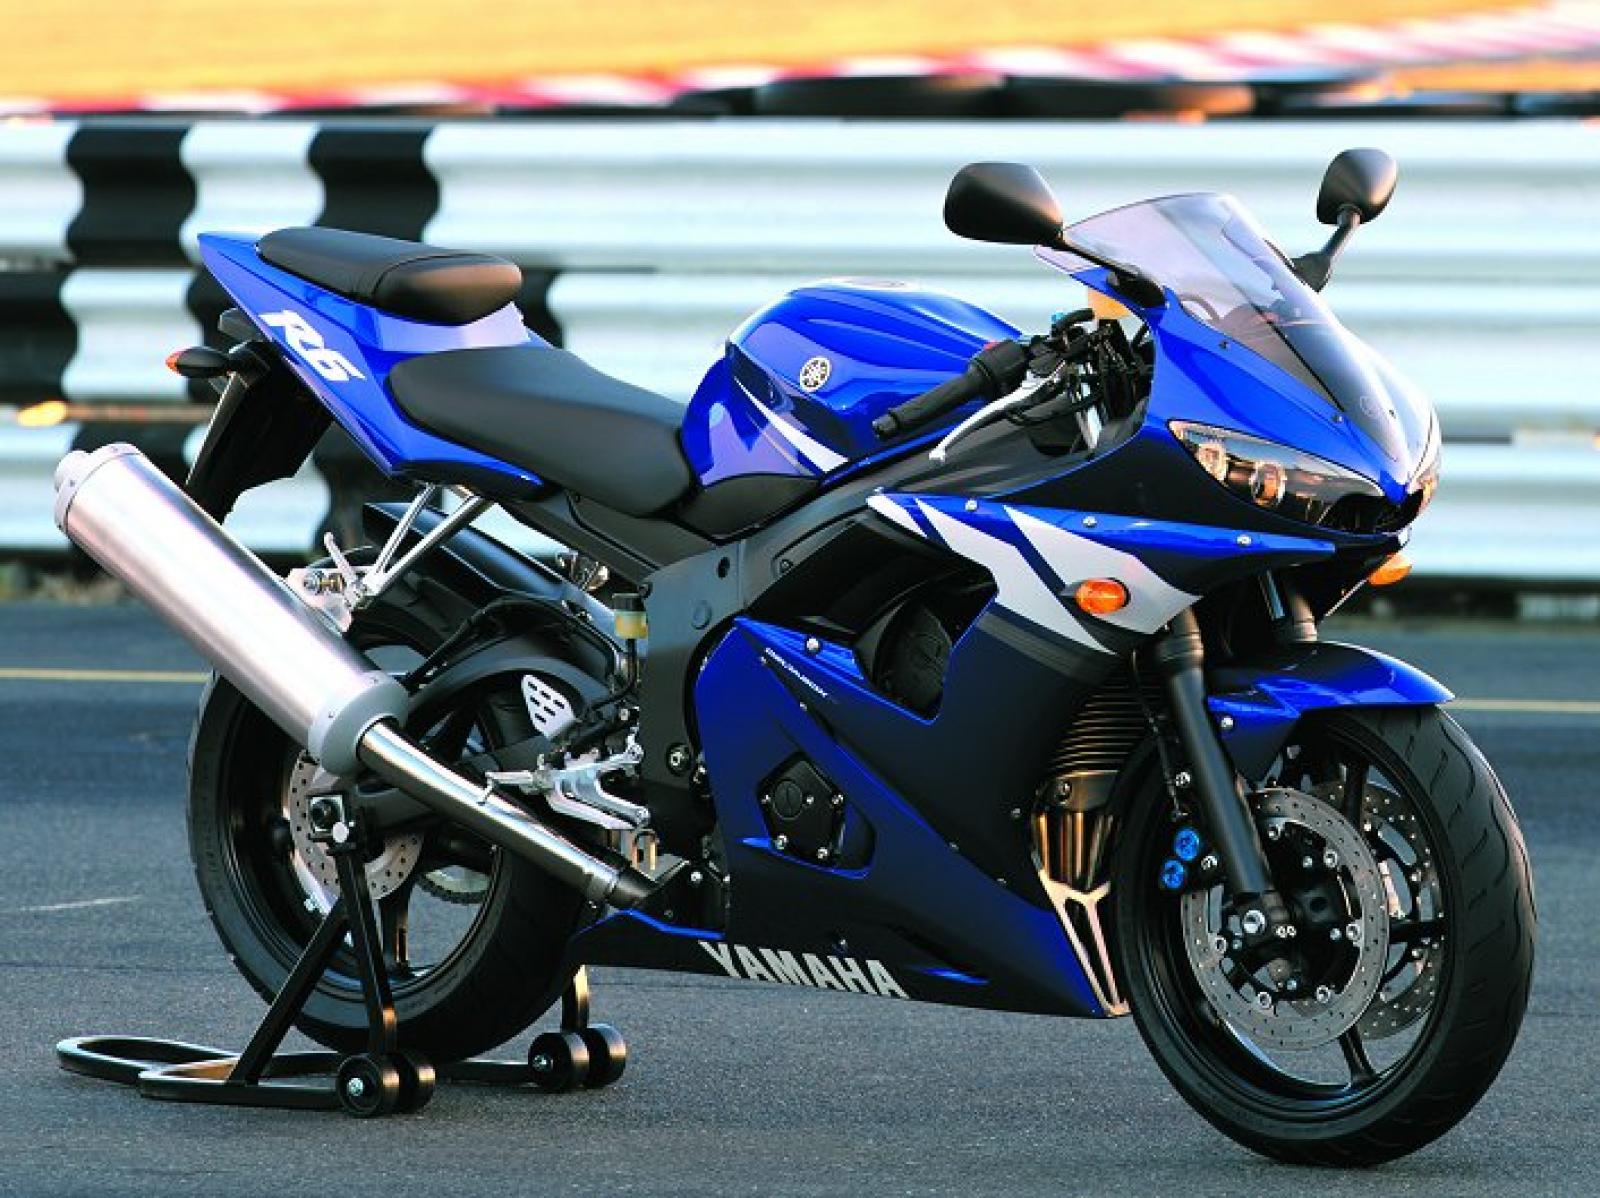 Yamaha r6 2005. Yamaha YZF r6 2003. Yamaha YZF r6 2005. Yamaha r6 2004. Yamaha YZF r6 2004.